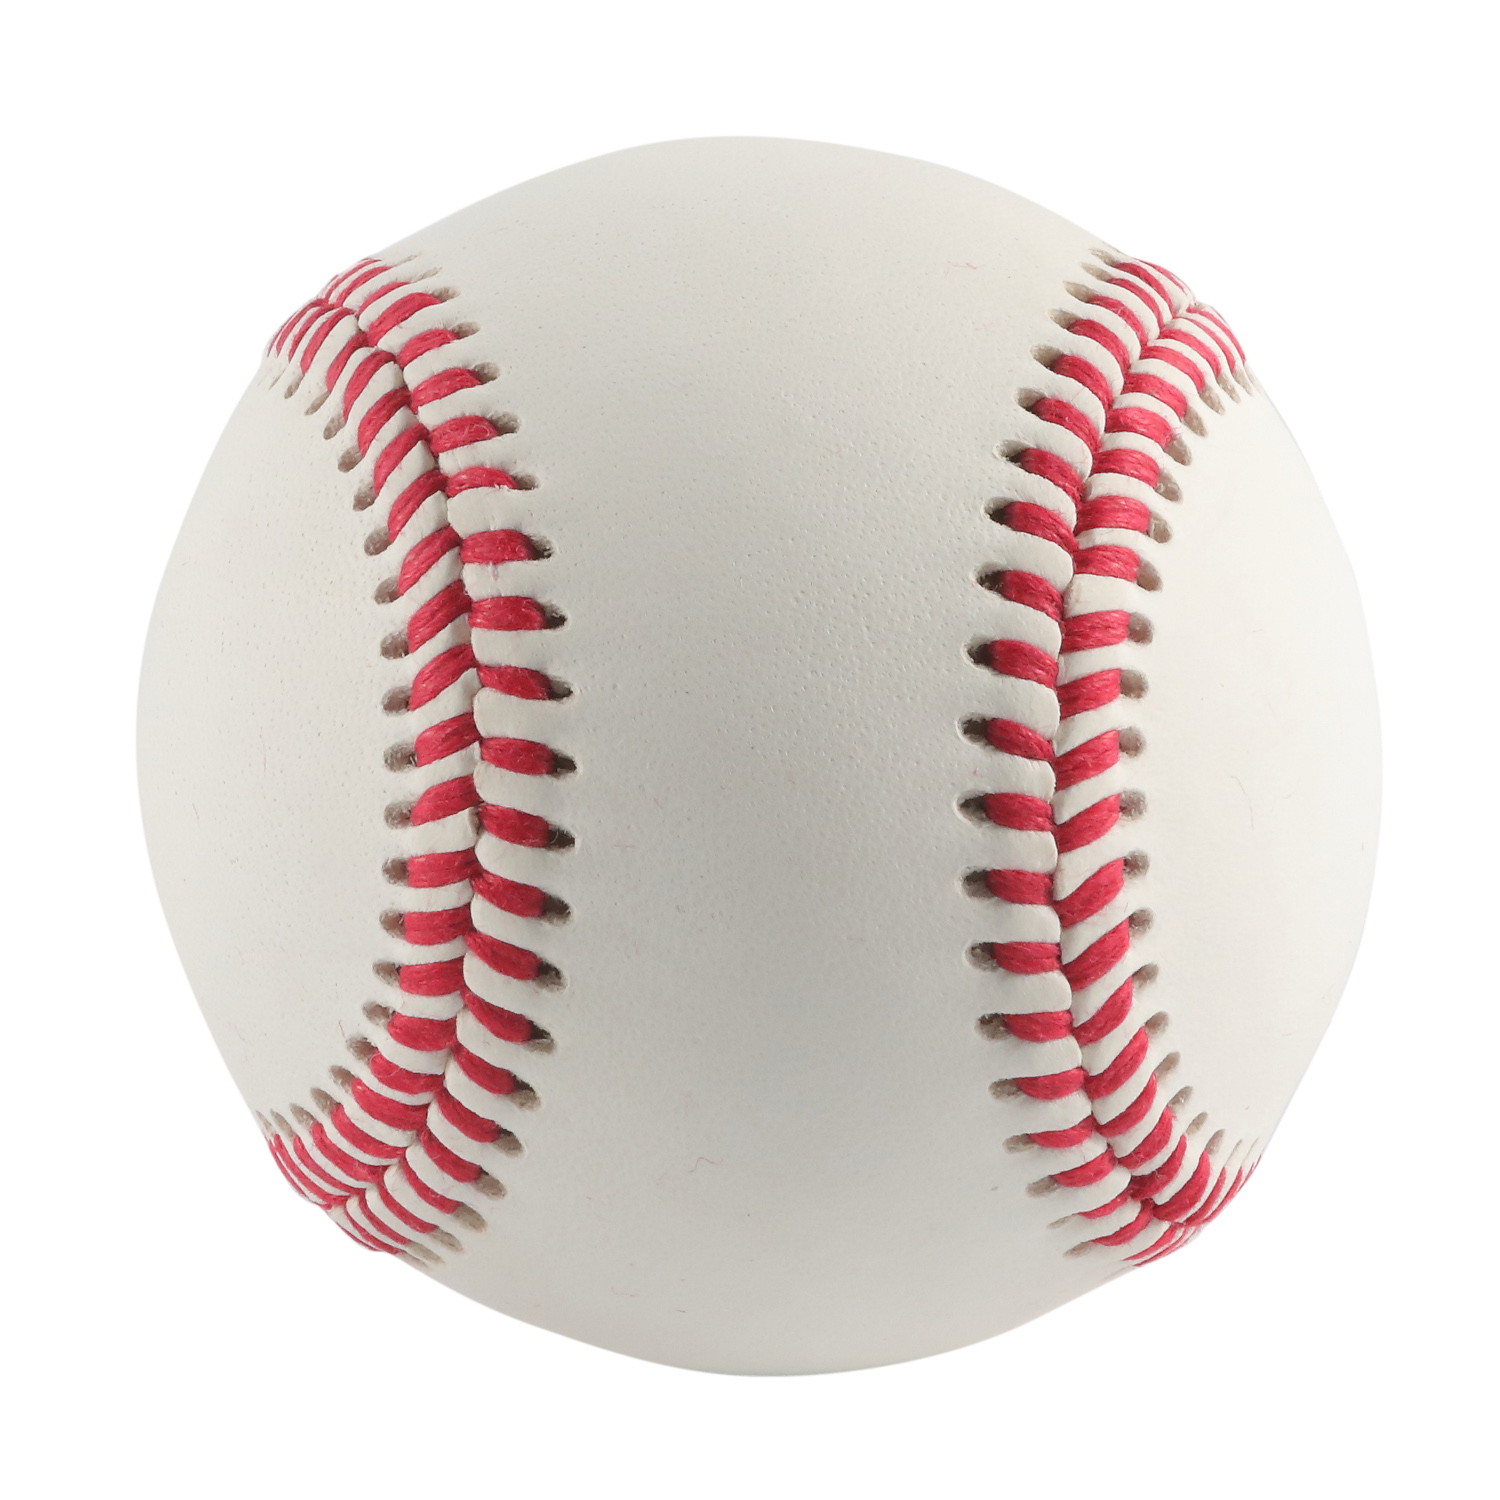 غطاء جلدي محبب بالكامل من جلد البقر مقاس 22.86 سم، كرة بيسبول جلدية رسمية رسمية من جامعة ليتل ليج كوليدج